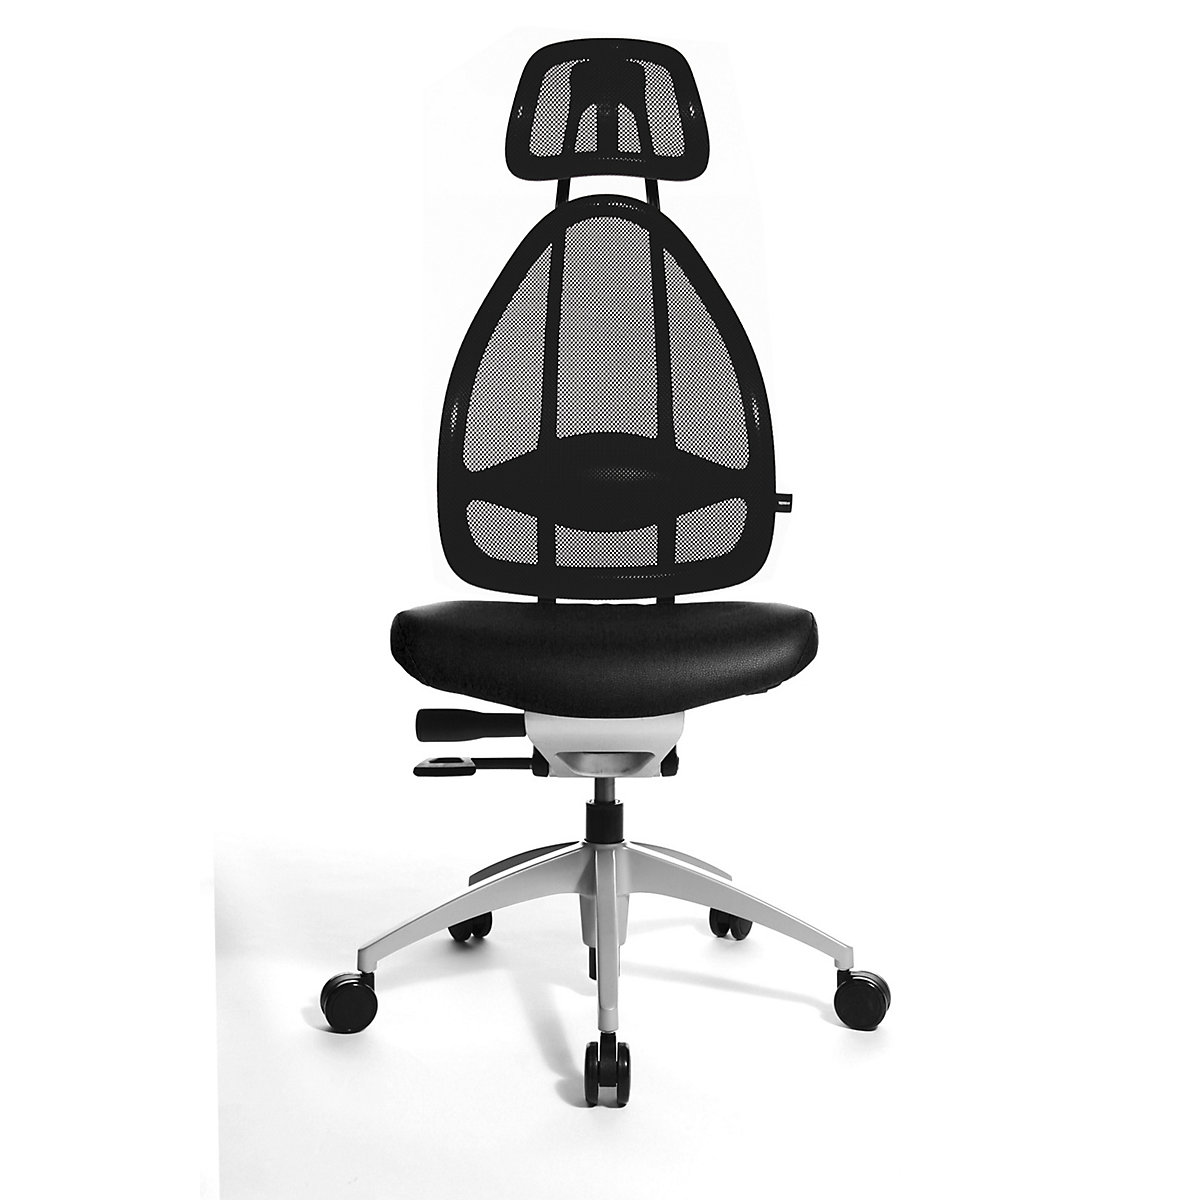 Efektowne obrotowe krzesło biurowe, z zagłówkiem i oparciem siatkowym - Topstar